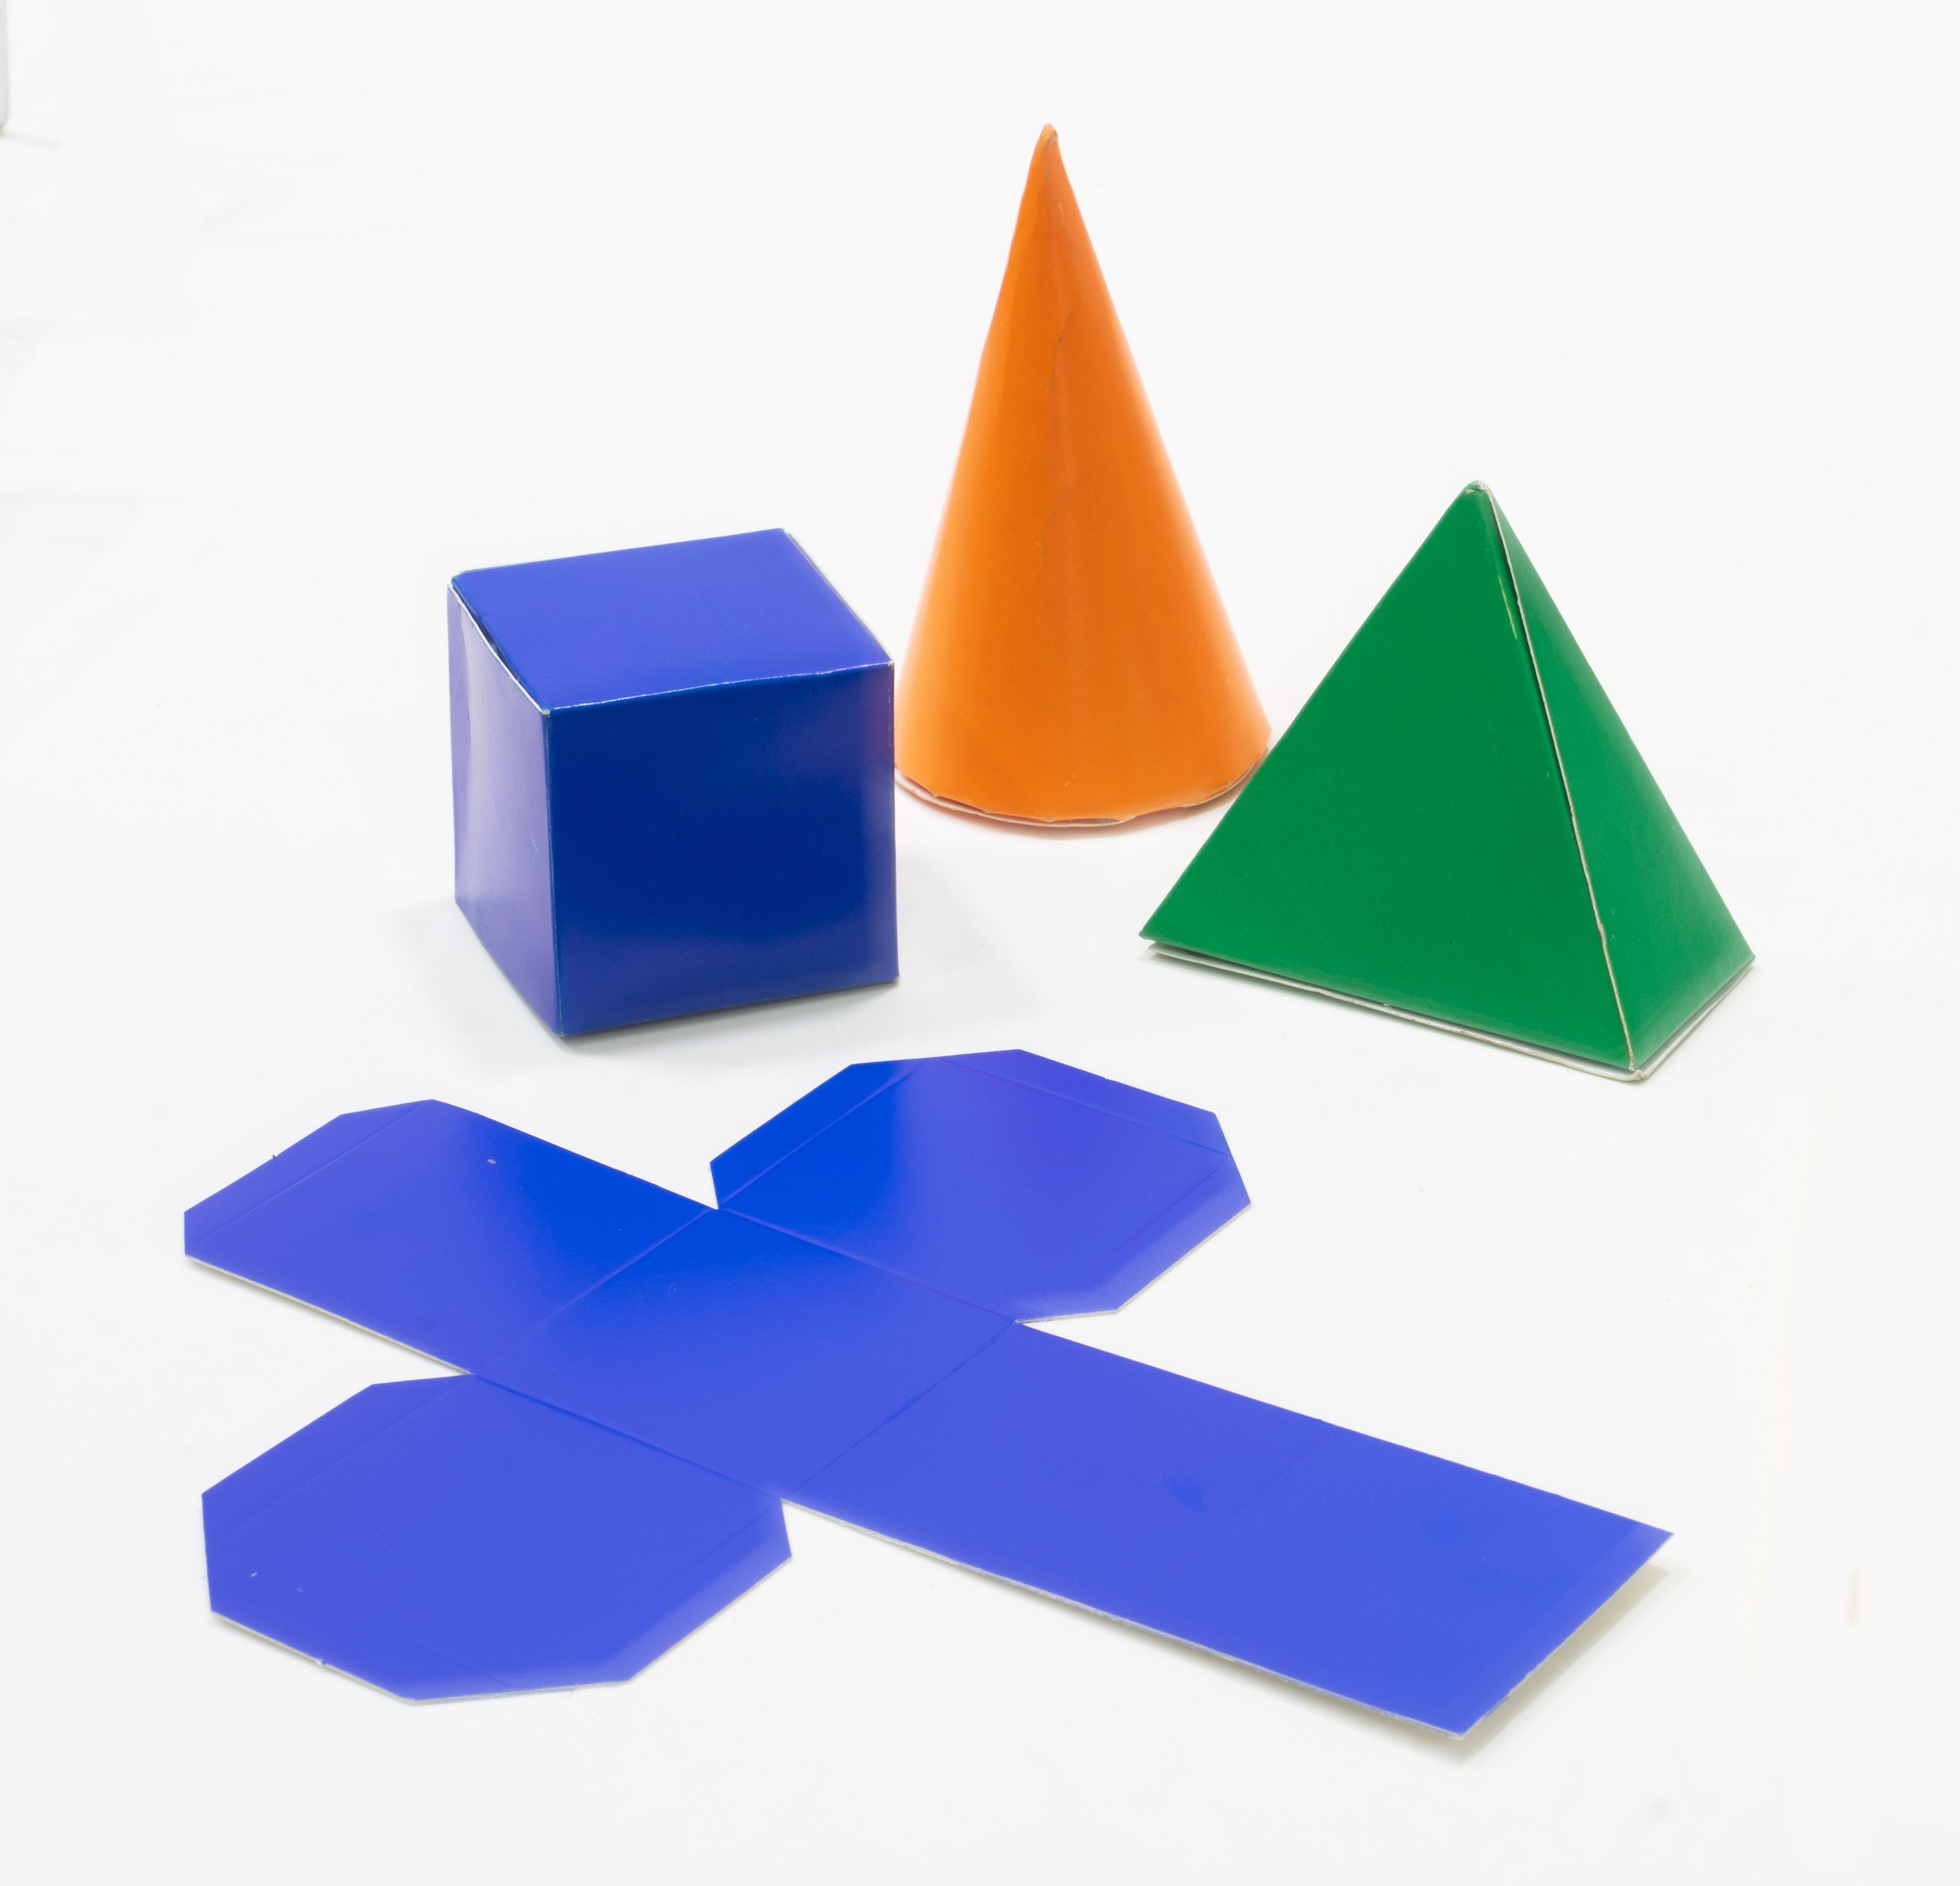 Jogo da Velha Triangular • MMP Materiais Pedagógicos para Matemática